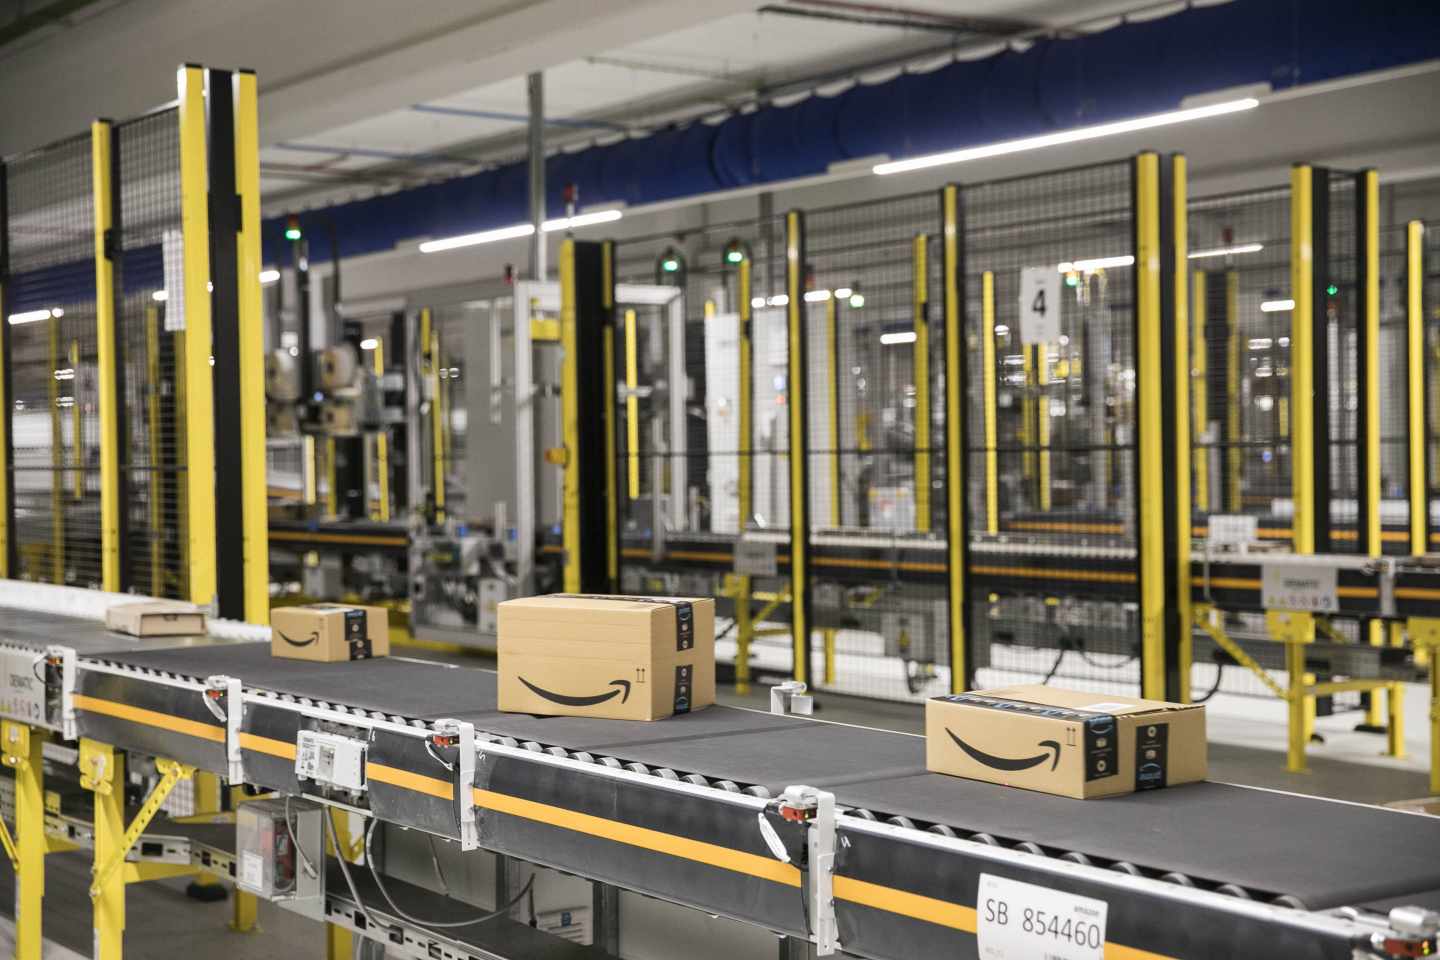 Amazon lanza su propia gama de juguetes y hace temblar al sector.